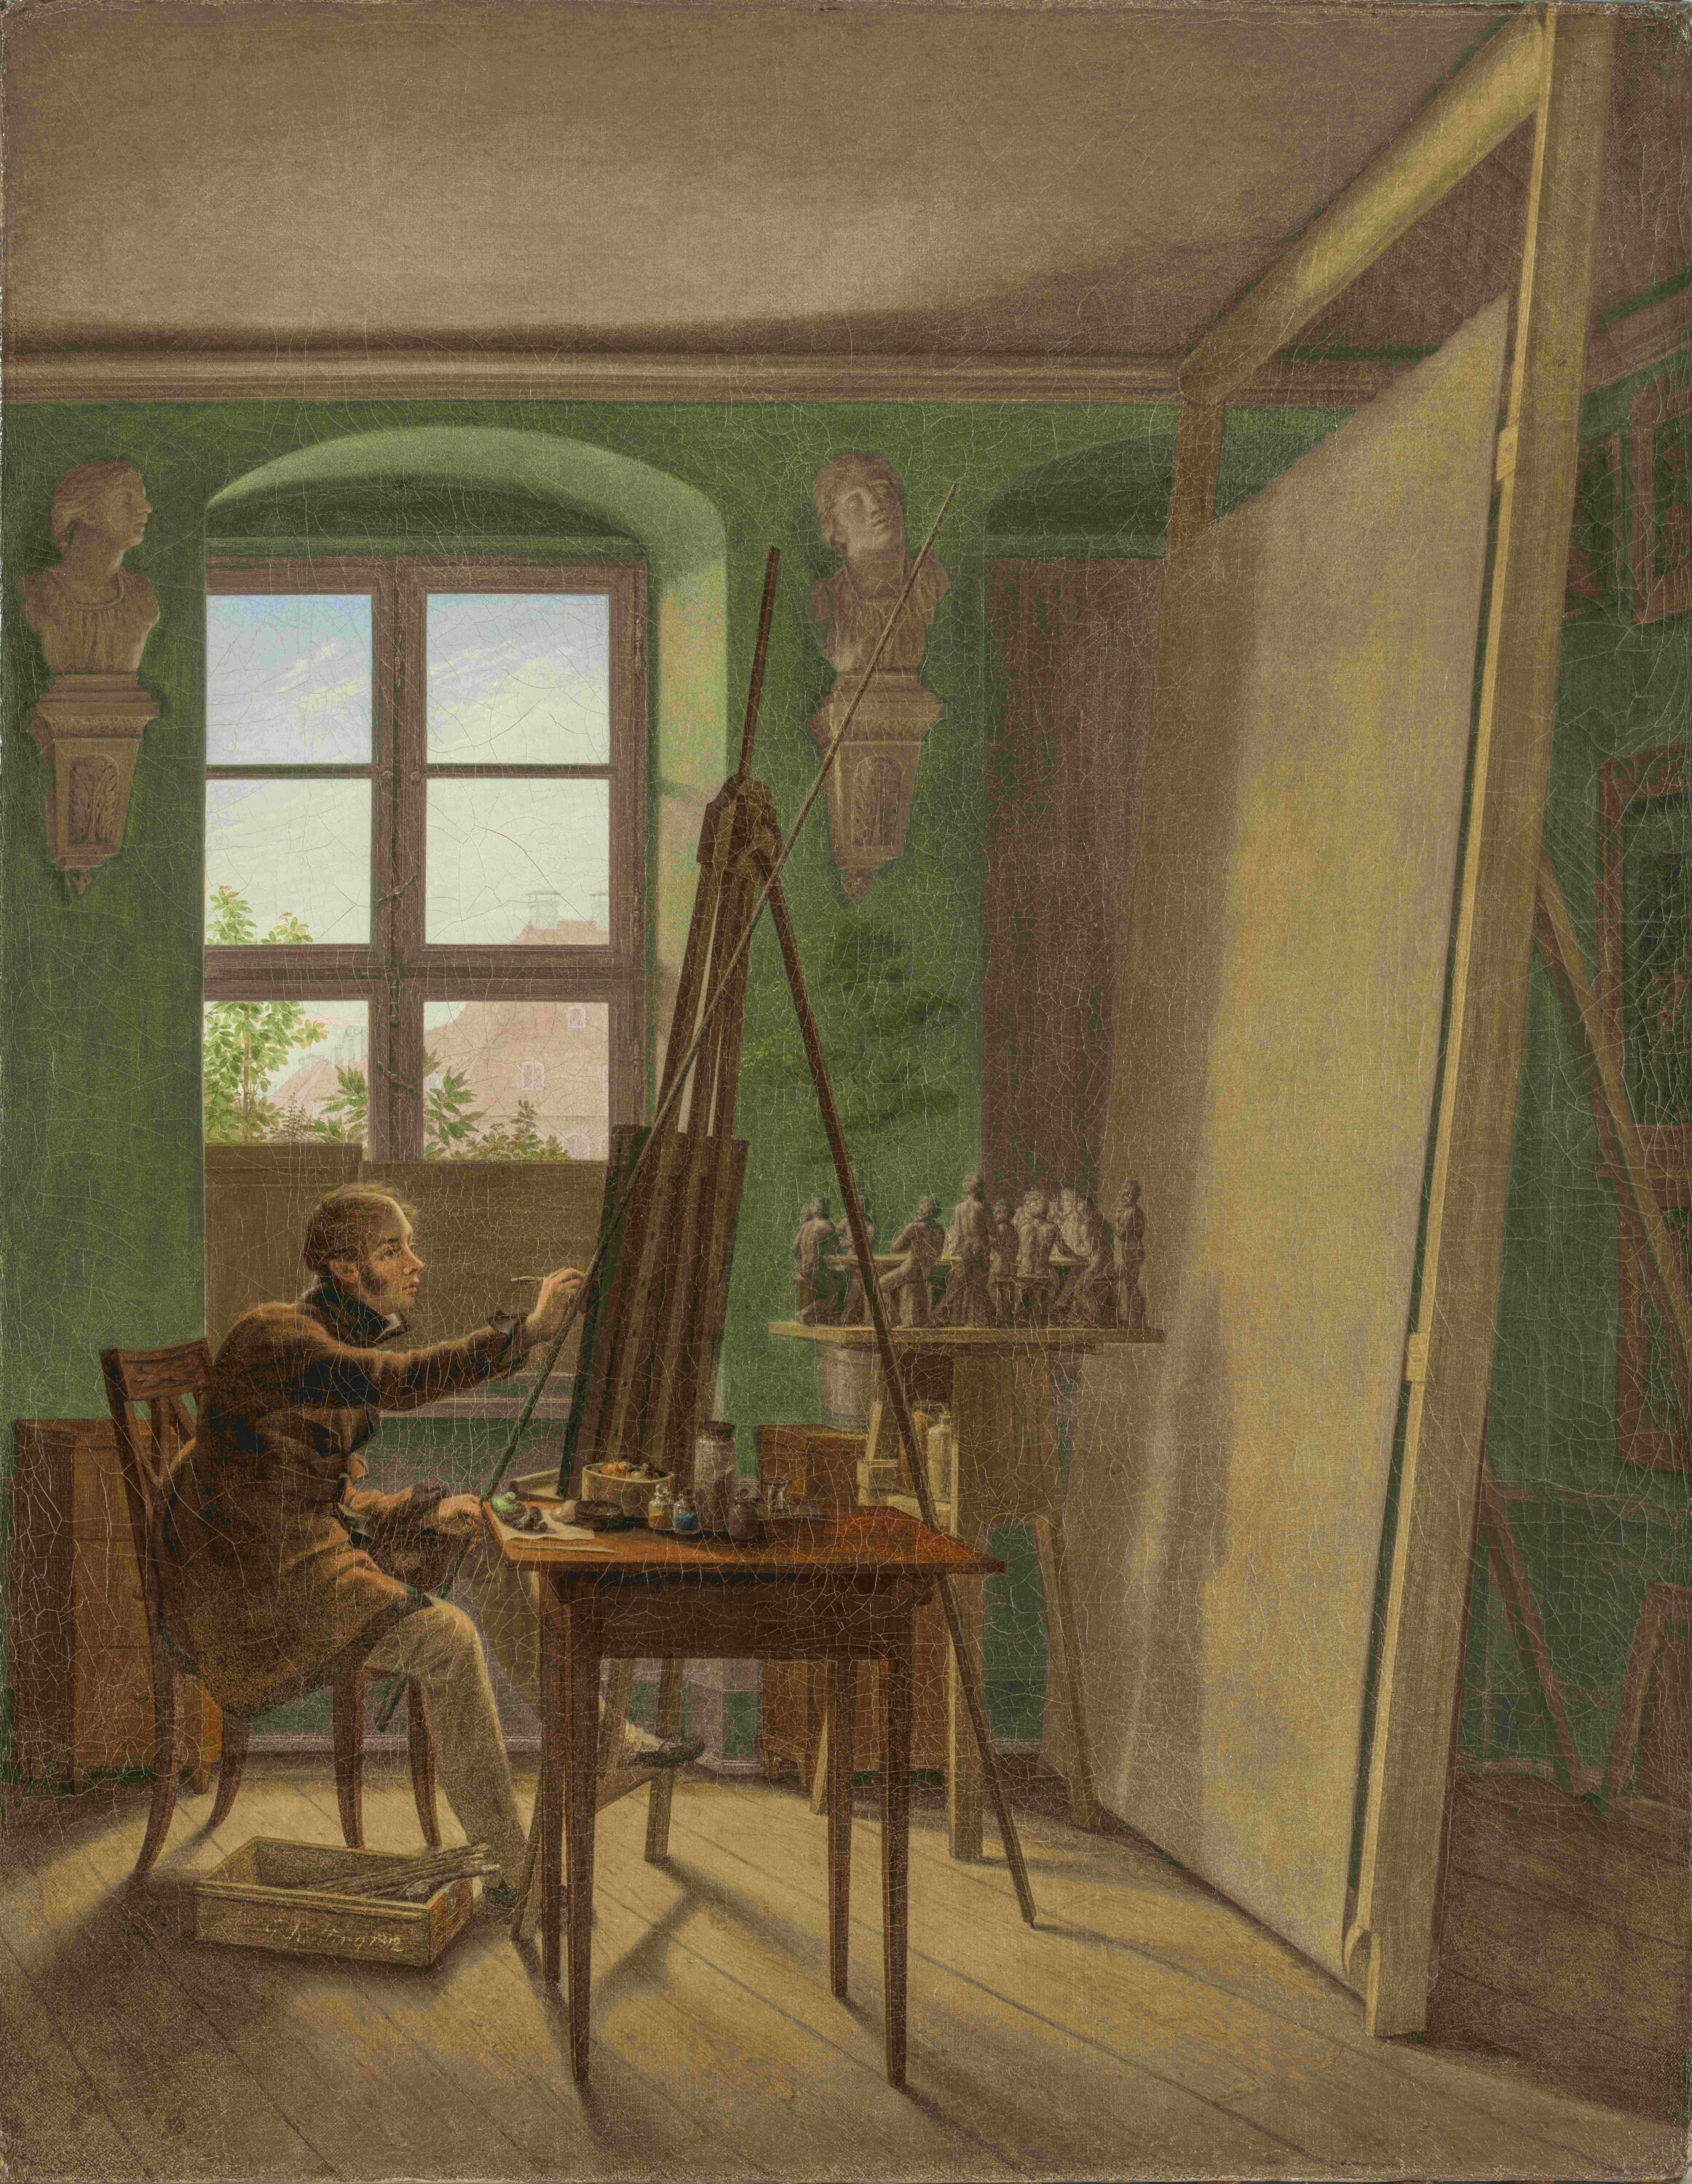 Der Maler Matthäi im Atelier (Kunstsammlungen Chemnitz, Inv.-Nr. 505 CC BY-NC-ND)